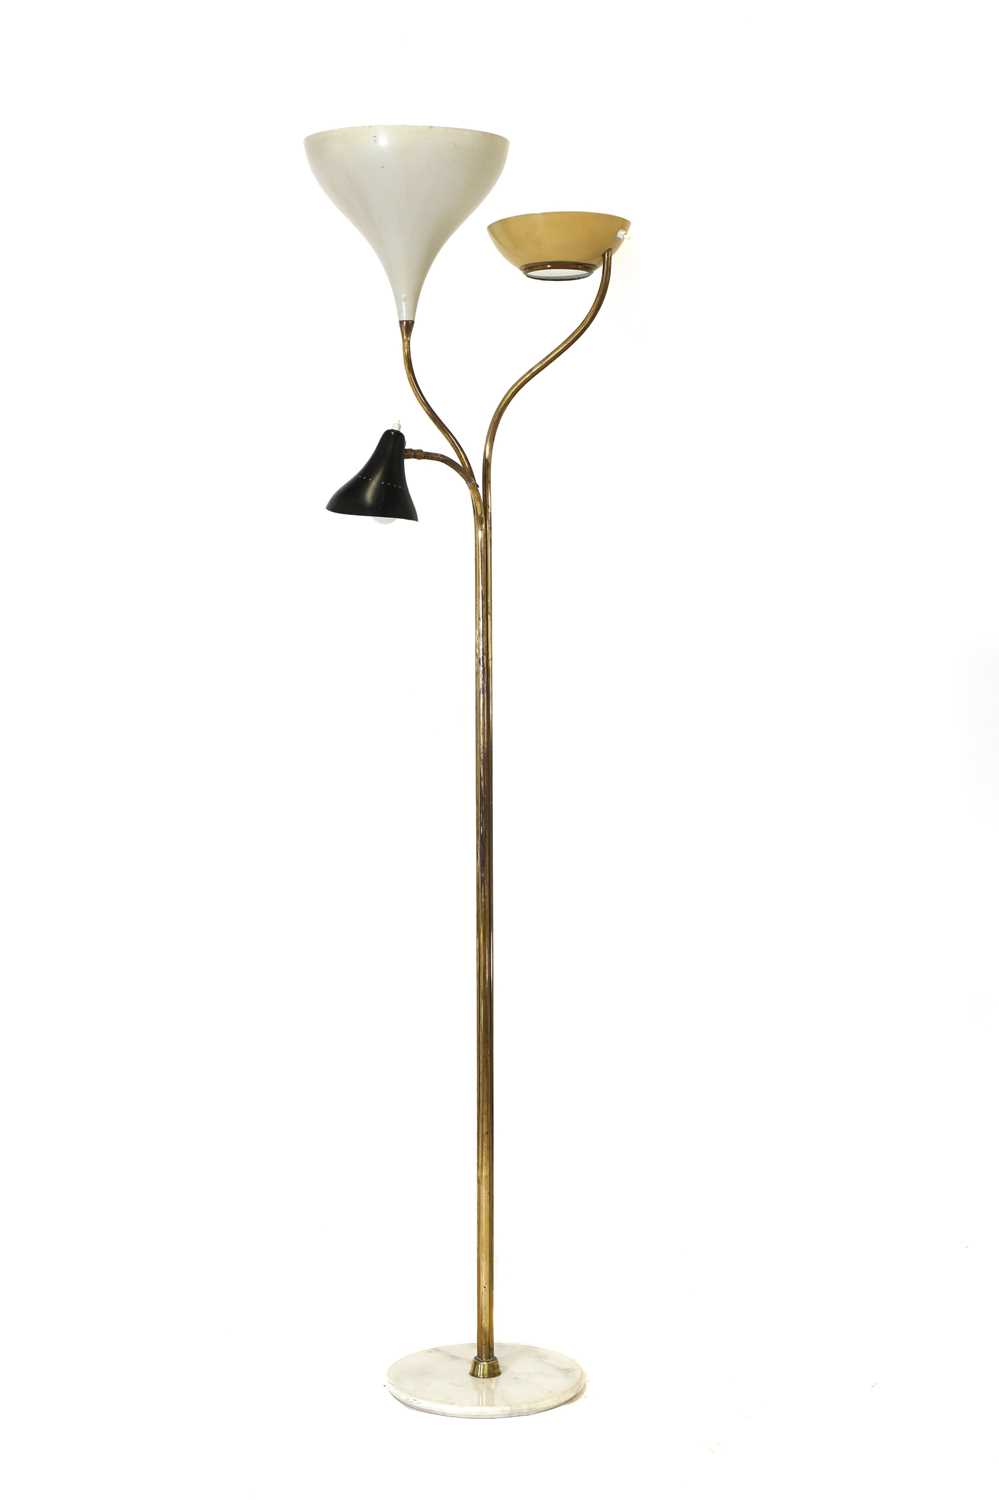 Lot 215 - An Italian modernist standard lamp